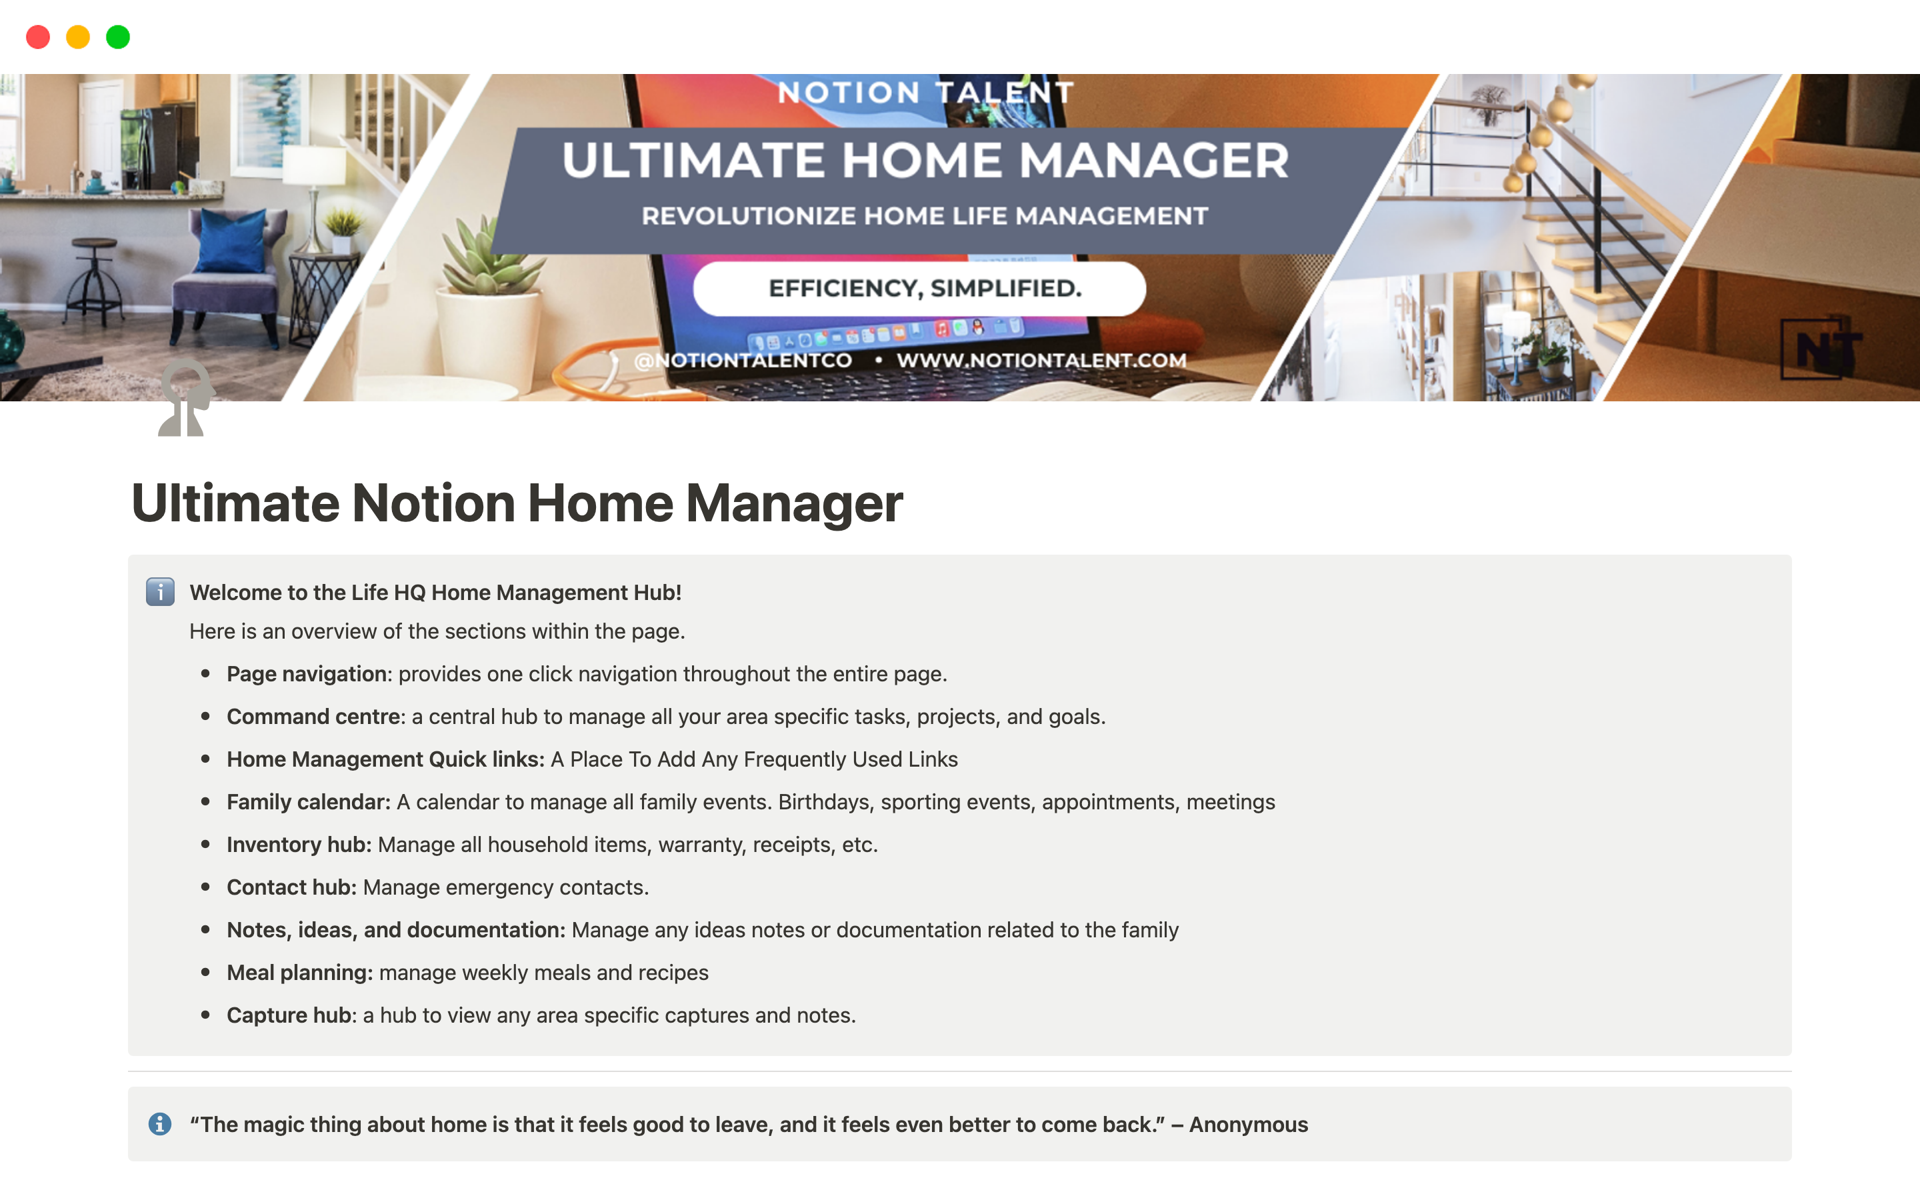 Uma prévia do modelo para Ultimate Home Manager